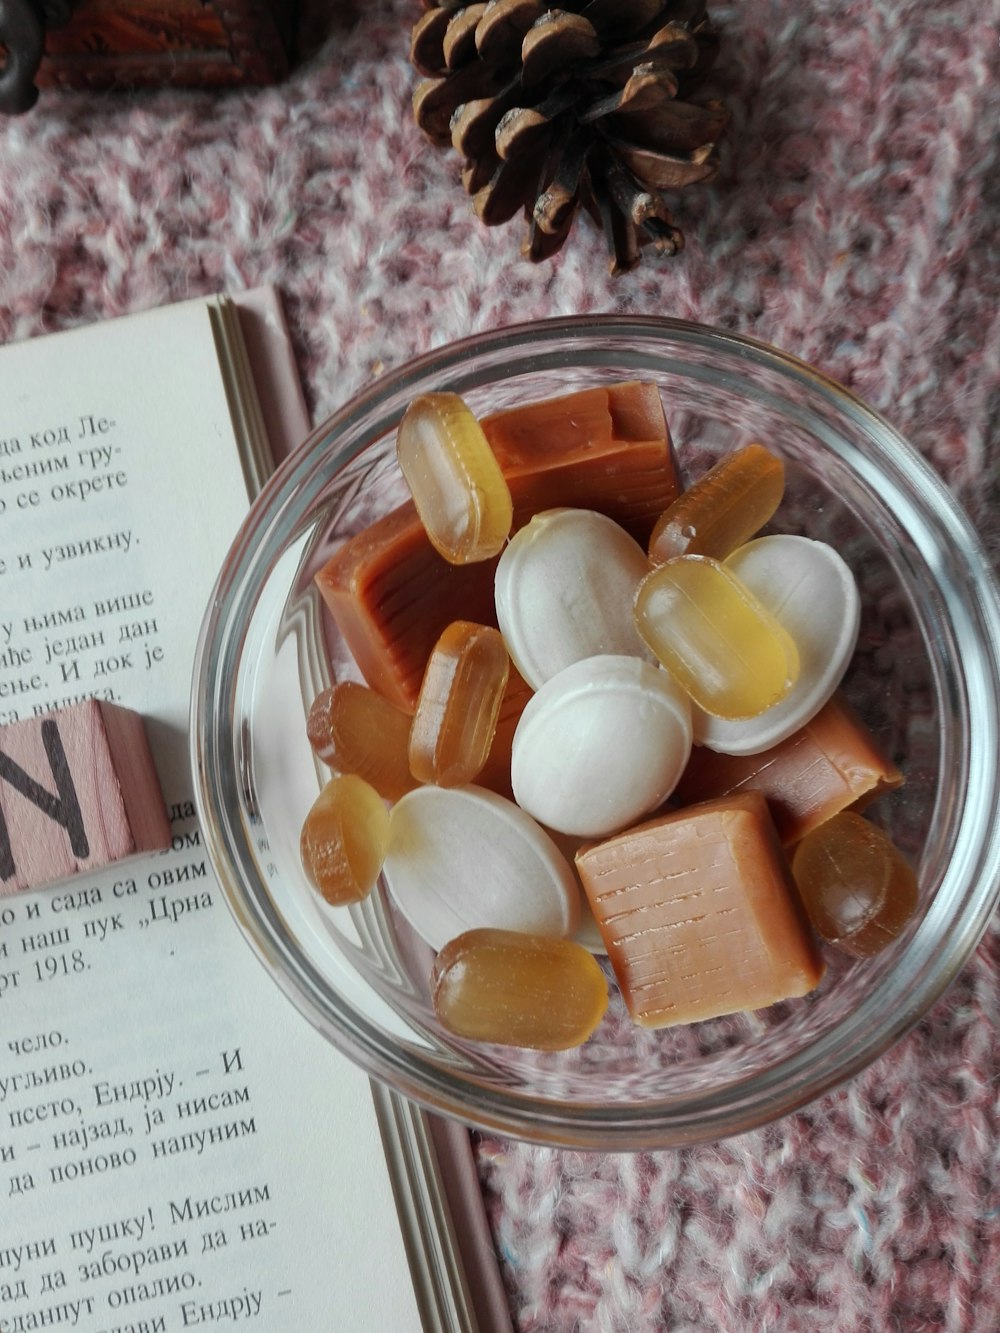 Verschiedene Süßigkeiten in klarer Glasschale neben dem Buch